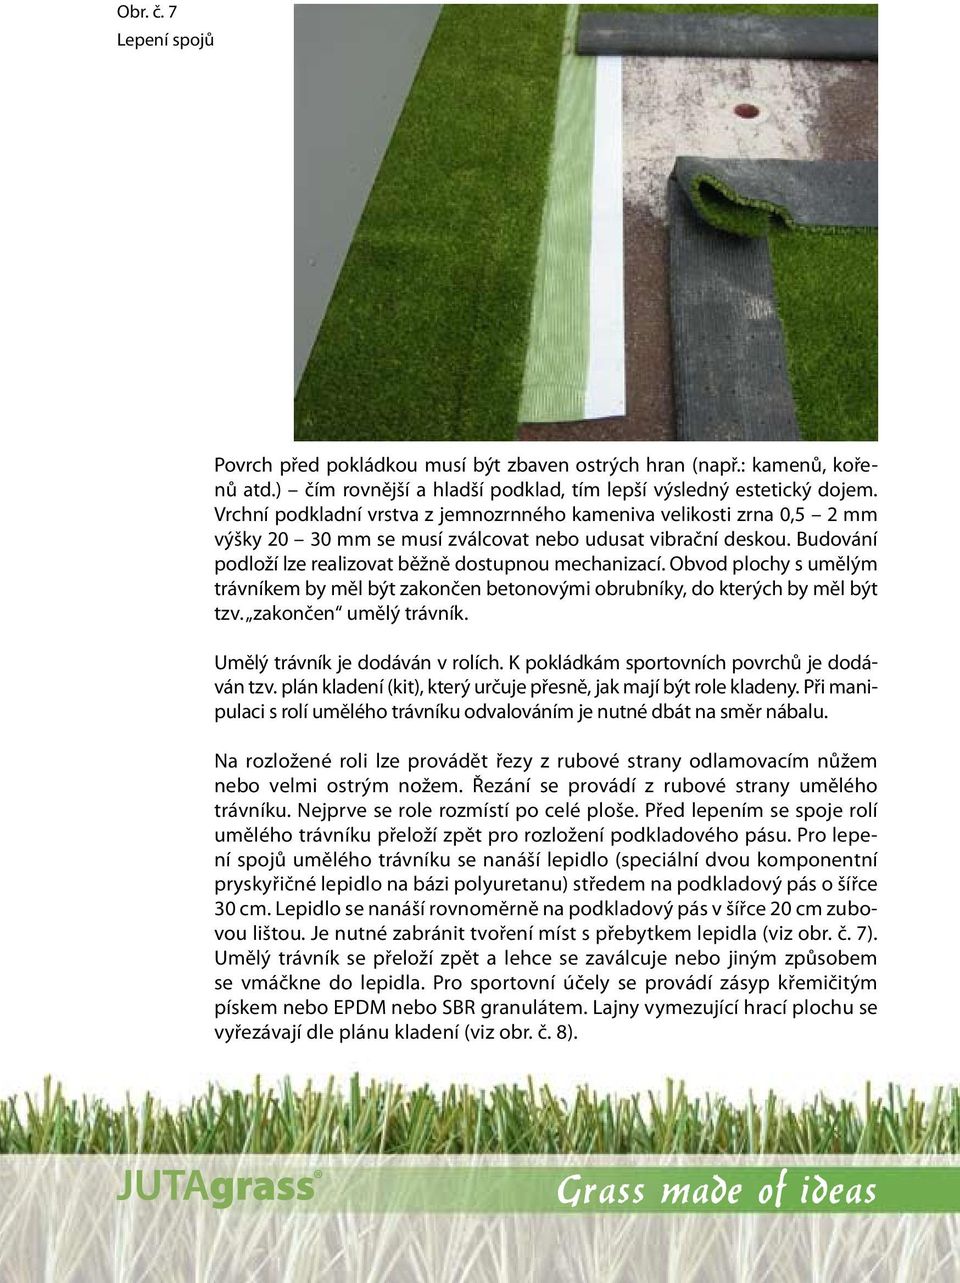 Obvod plochy s umělým trávníkem by měl být zakončen betonovými obrubníky, do kterých by měl být tzv. zakončen umělý trávník. Umělý trávník je dodáván v rolích.